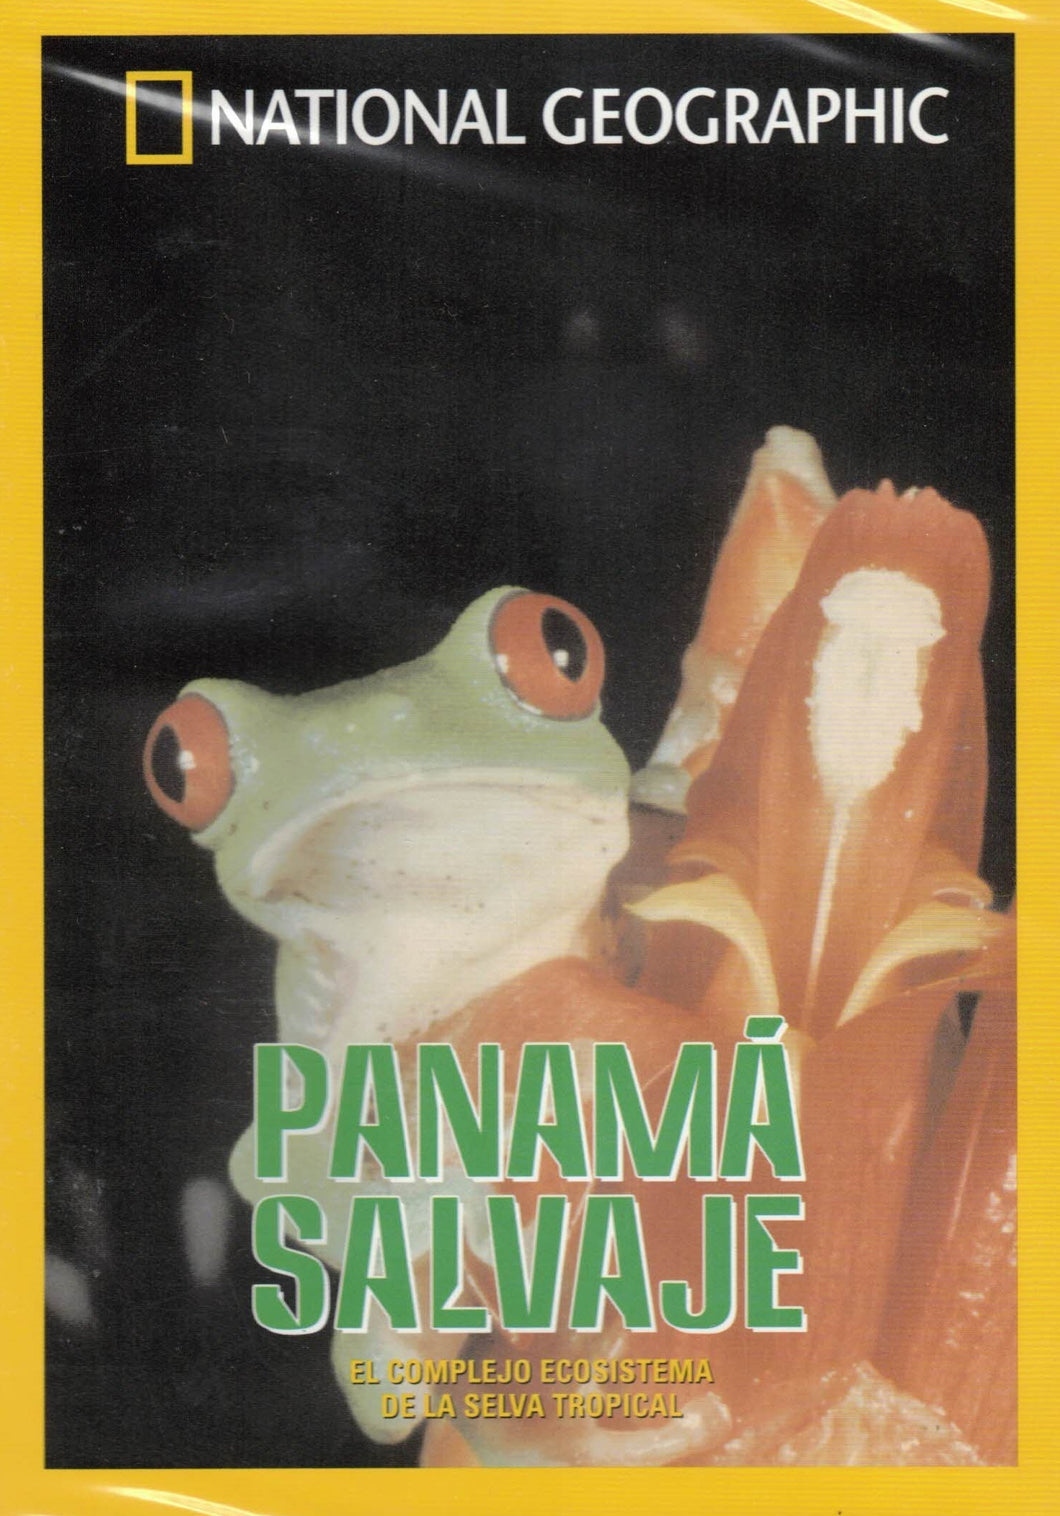 Panamá Salvaje - NATIONAL GEOGRAPHIC (DVD) C-198 (NUEVO)